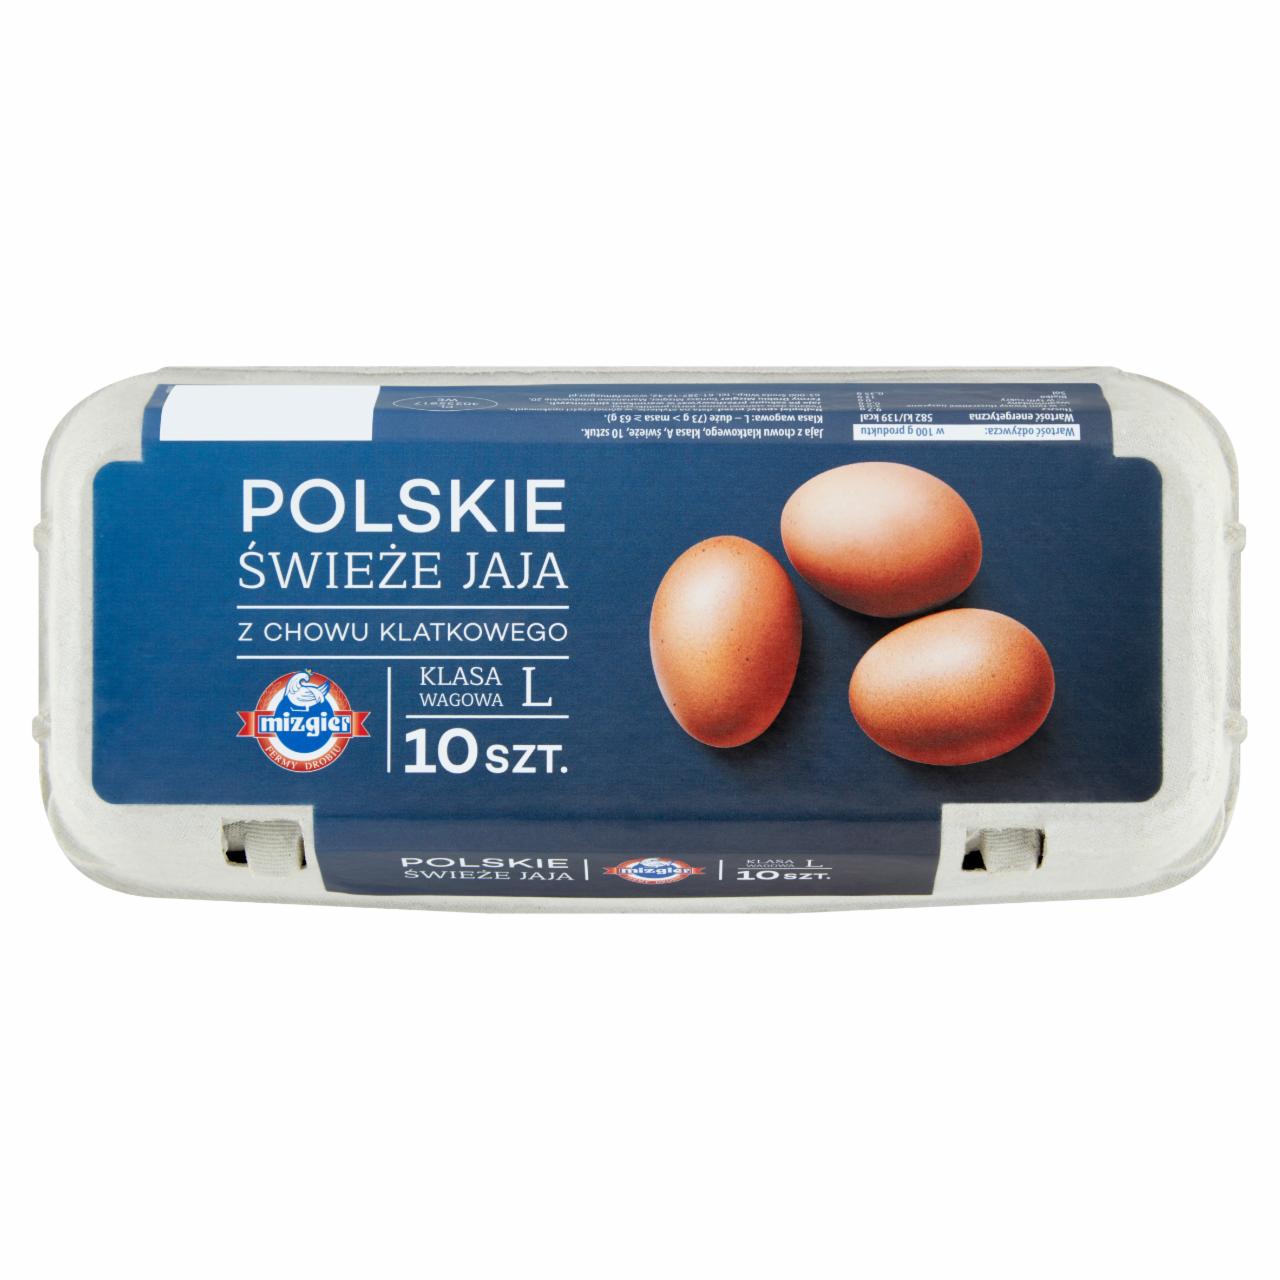 Zdjęcia - Mizgier Polskie świeże jaja z chowu klatkowego L 10 sztuk